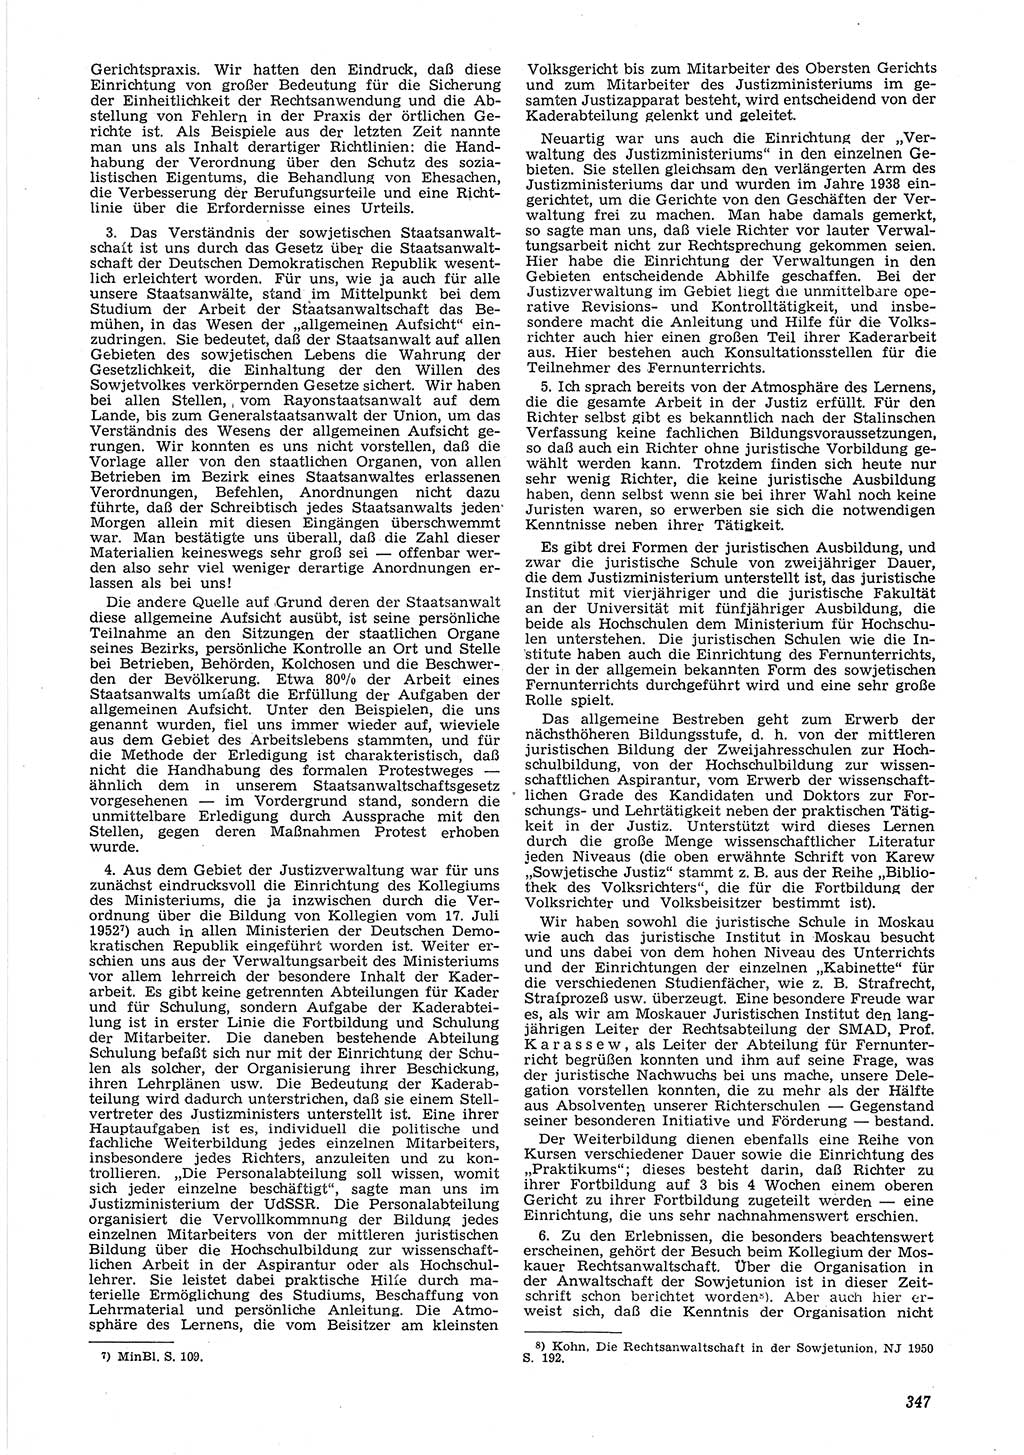 Neue Justiz (NJ), Zeitschrift für Recht und Rechtswissenschaft [Deutsche Demokratische Republik (DDR)], 6. Jahrgang 1952, Seite 347 (NJ DDR 1952, S. 347)